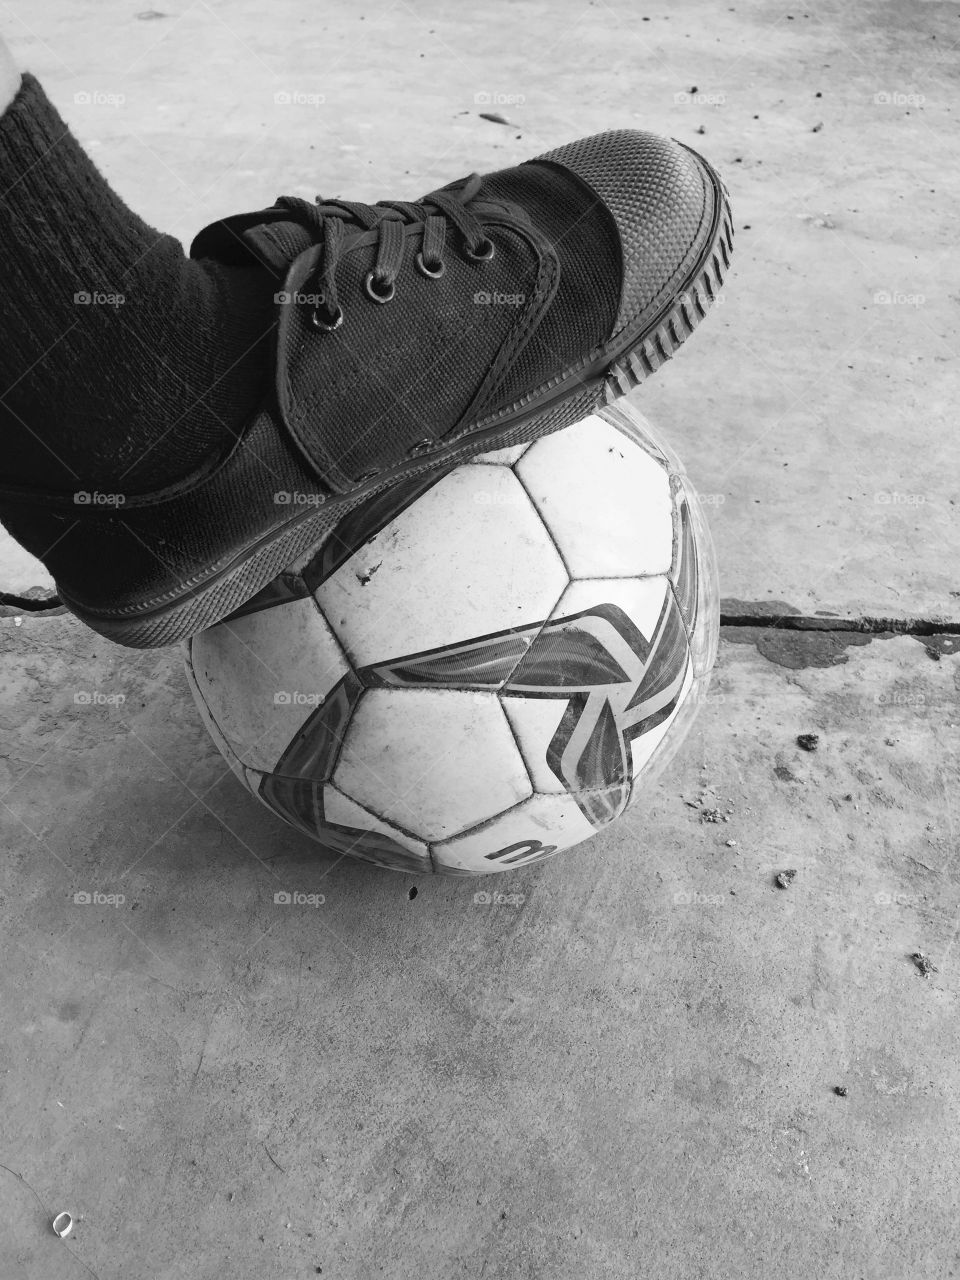 Football under foot.